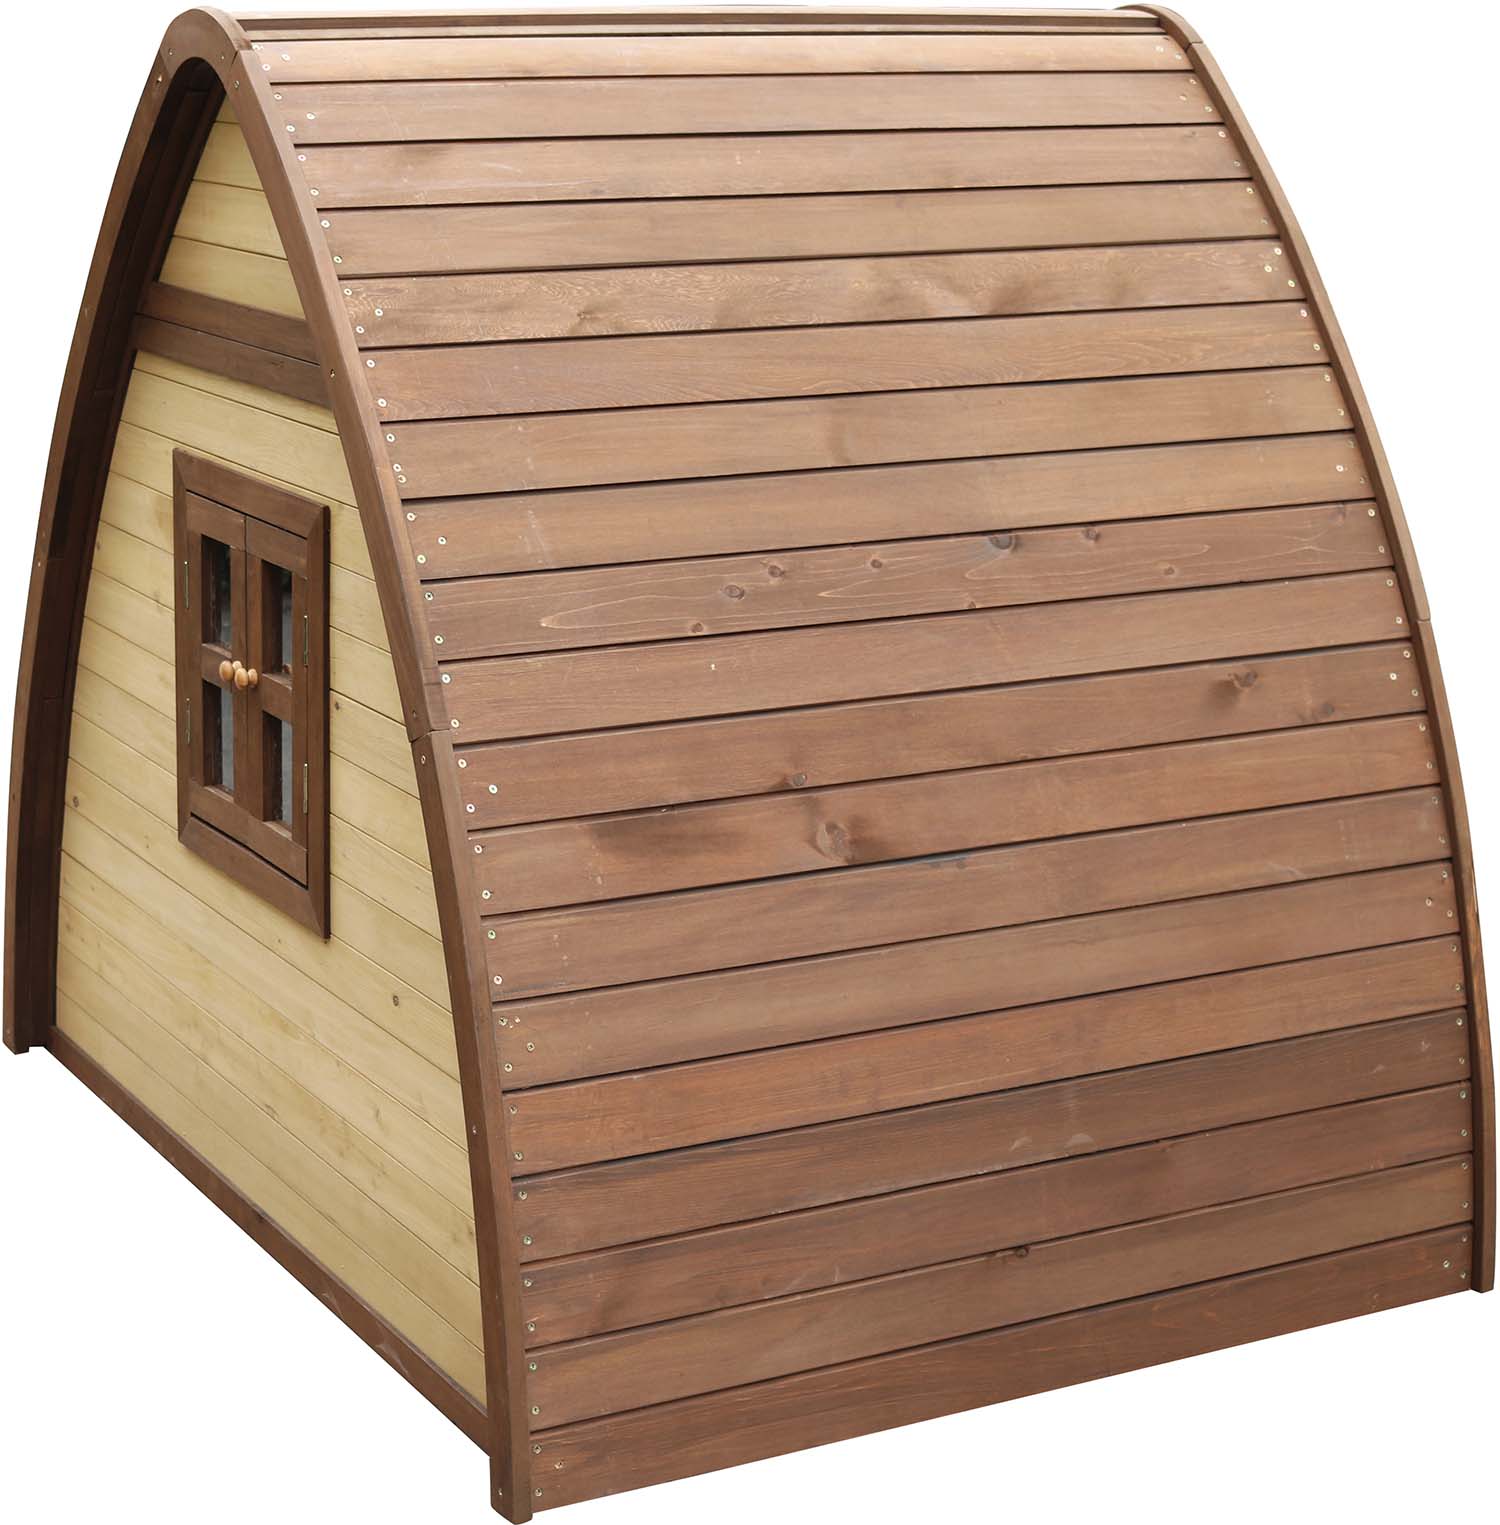 Cabane hutte  en bois pour enfant bali 